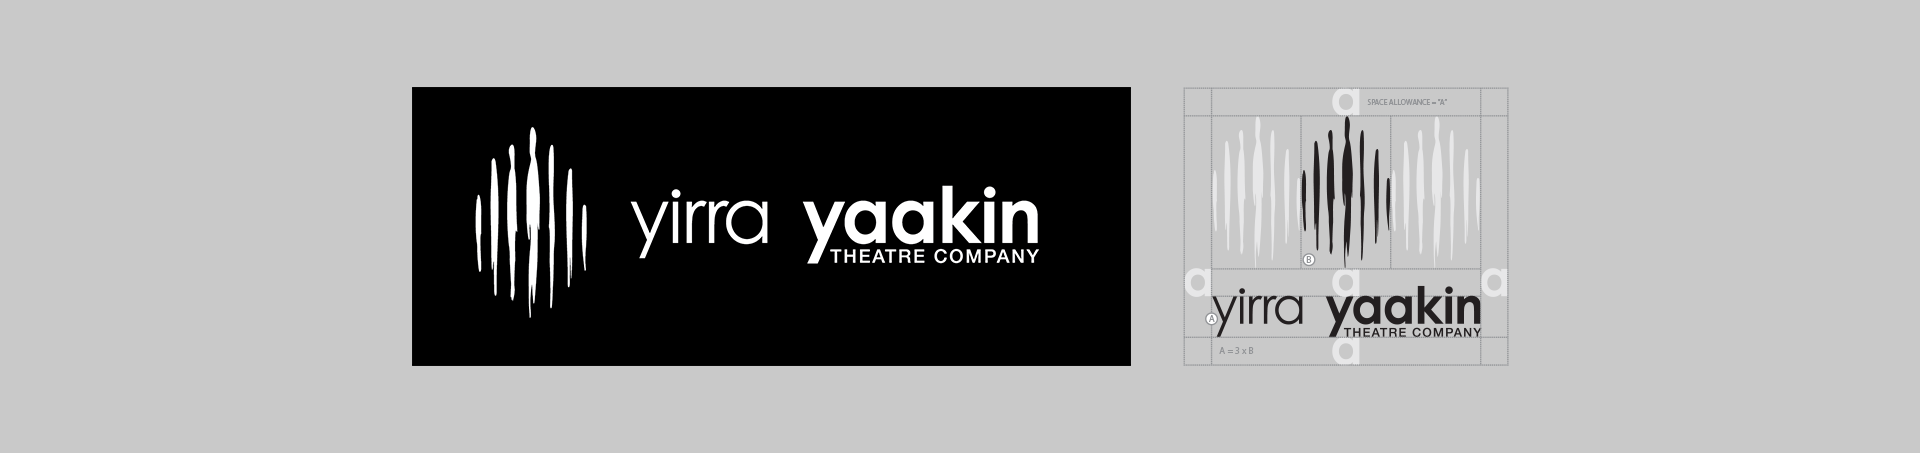 BEVIN CREATIVE – Yirra Yaakin Banner Logo